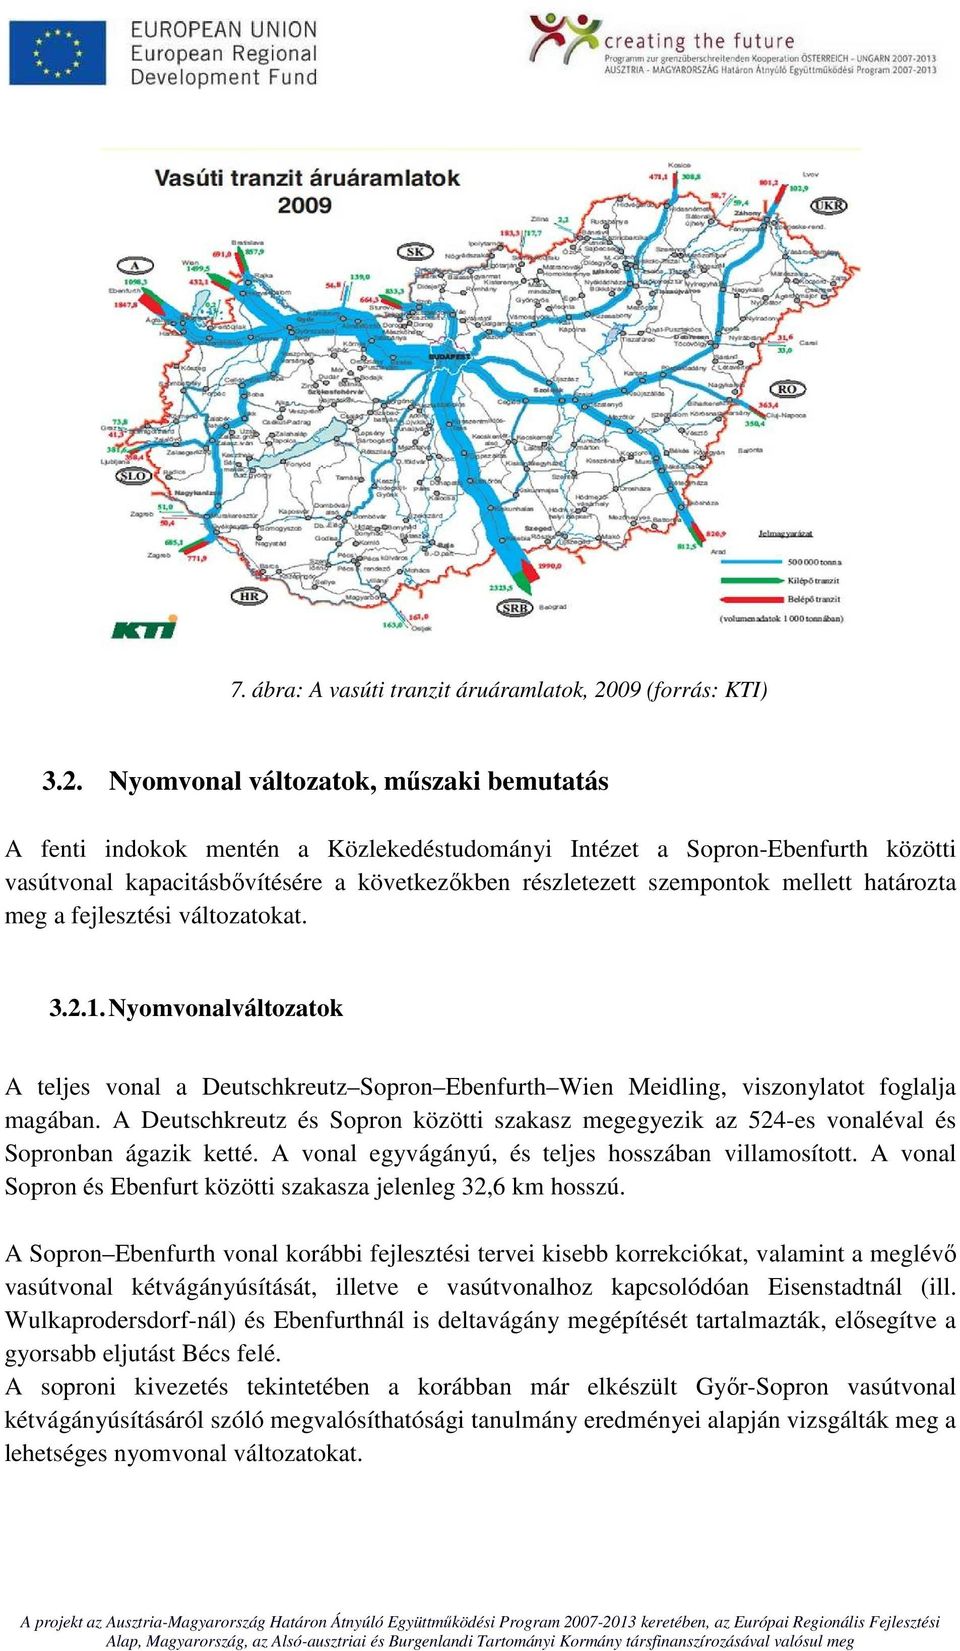 Nyomvonal változatok, műszaki bemutatás A fenti indokok mentén a Közlekedéstudományi Intézet a Sopron-Ebenfurth közötti vasútvonal kapacitásbővítésére a következőkben részletezett szempontok mellett